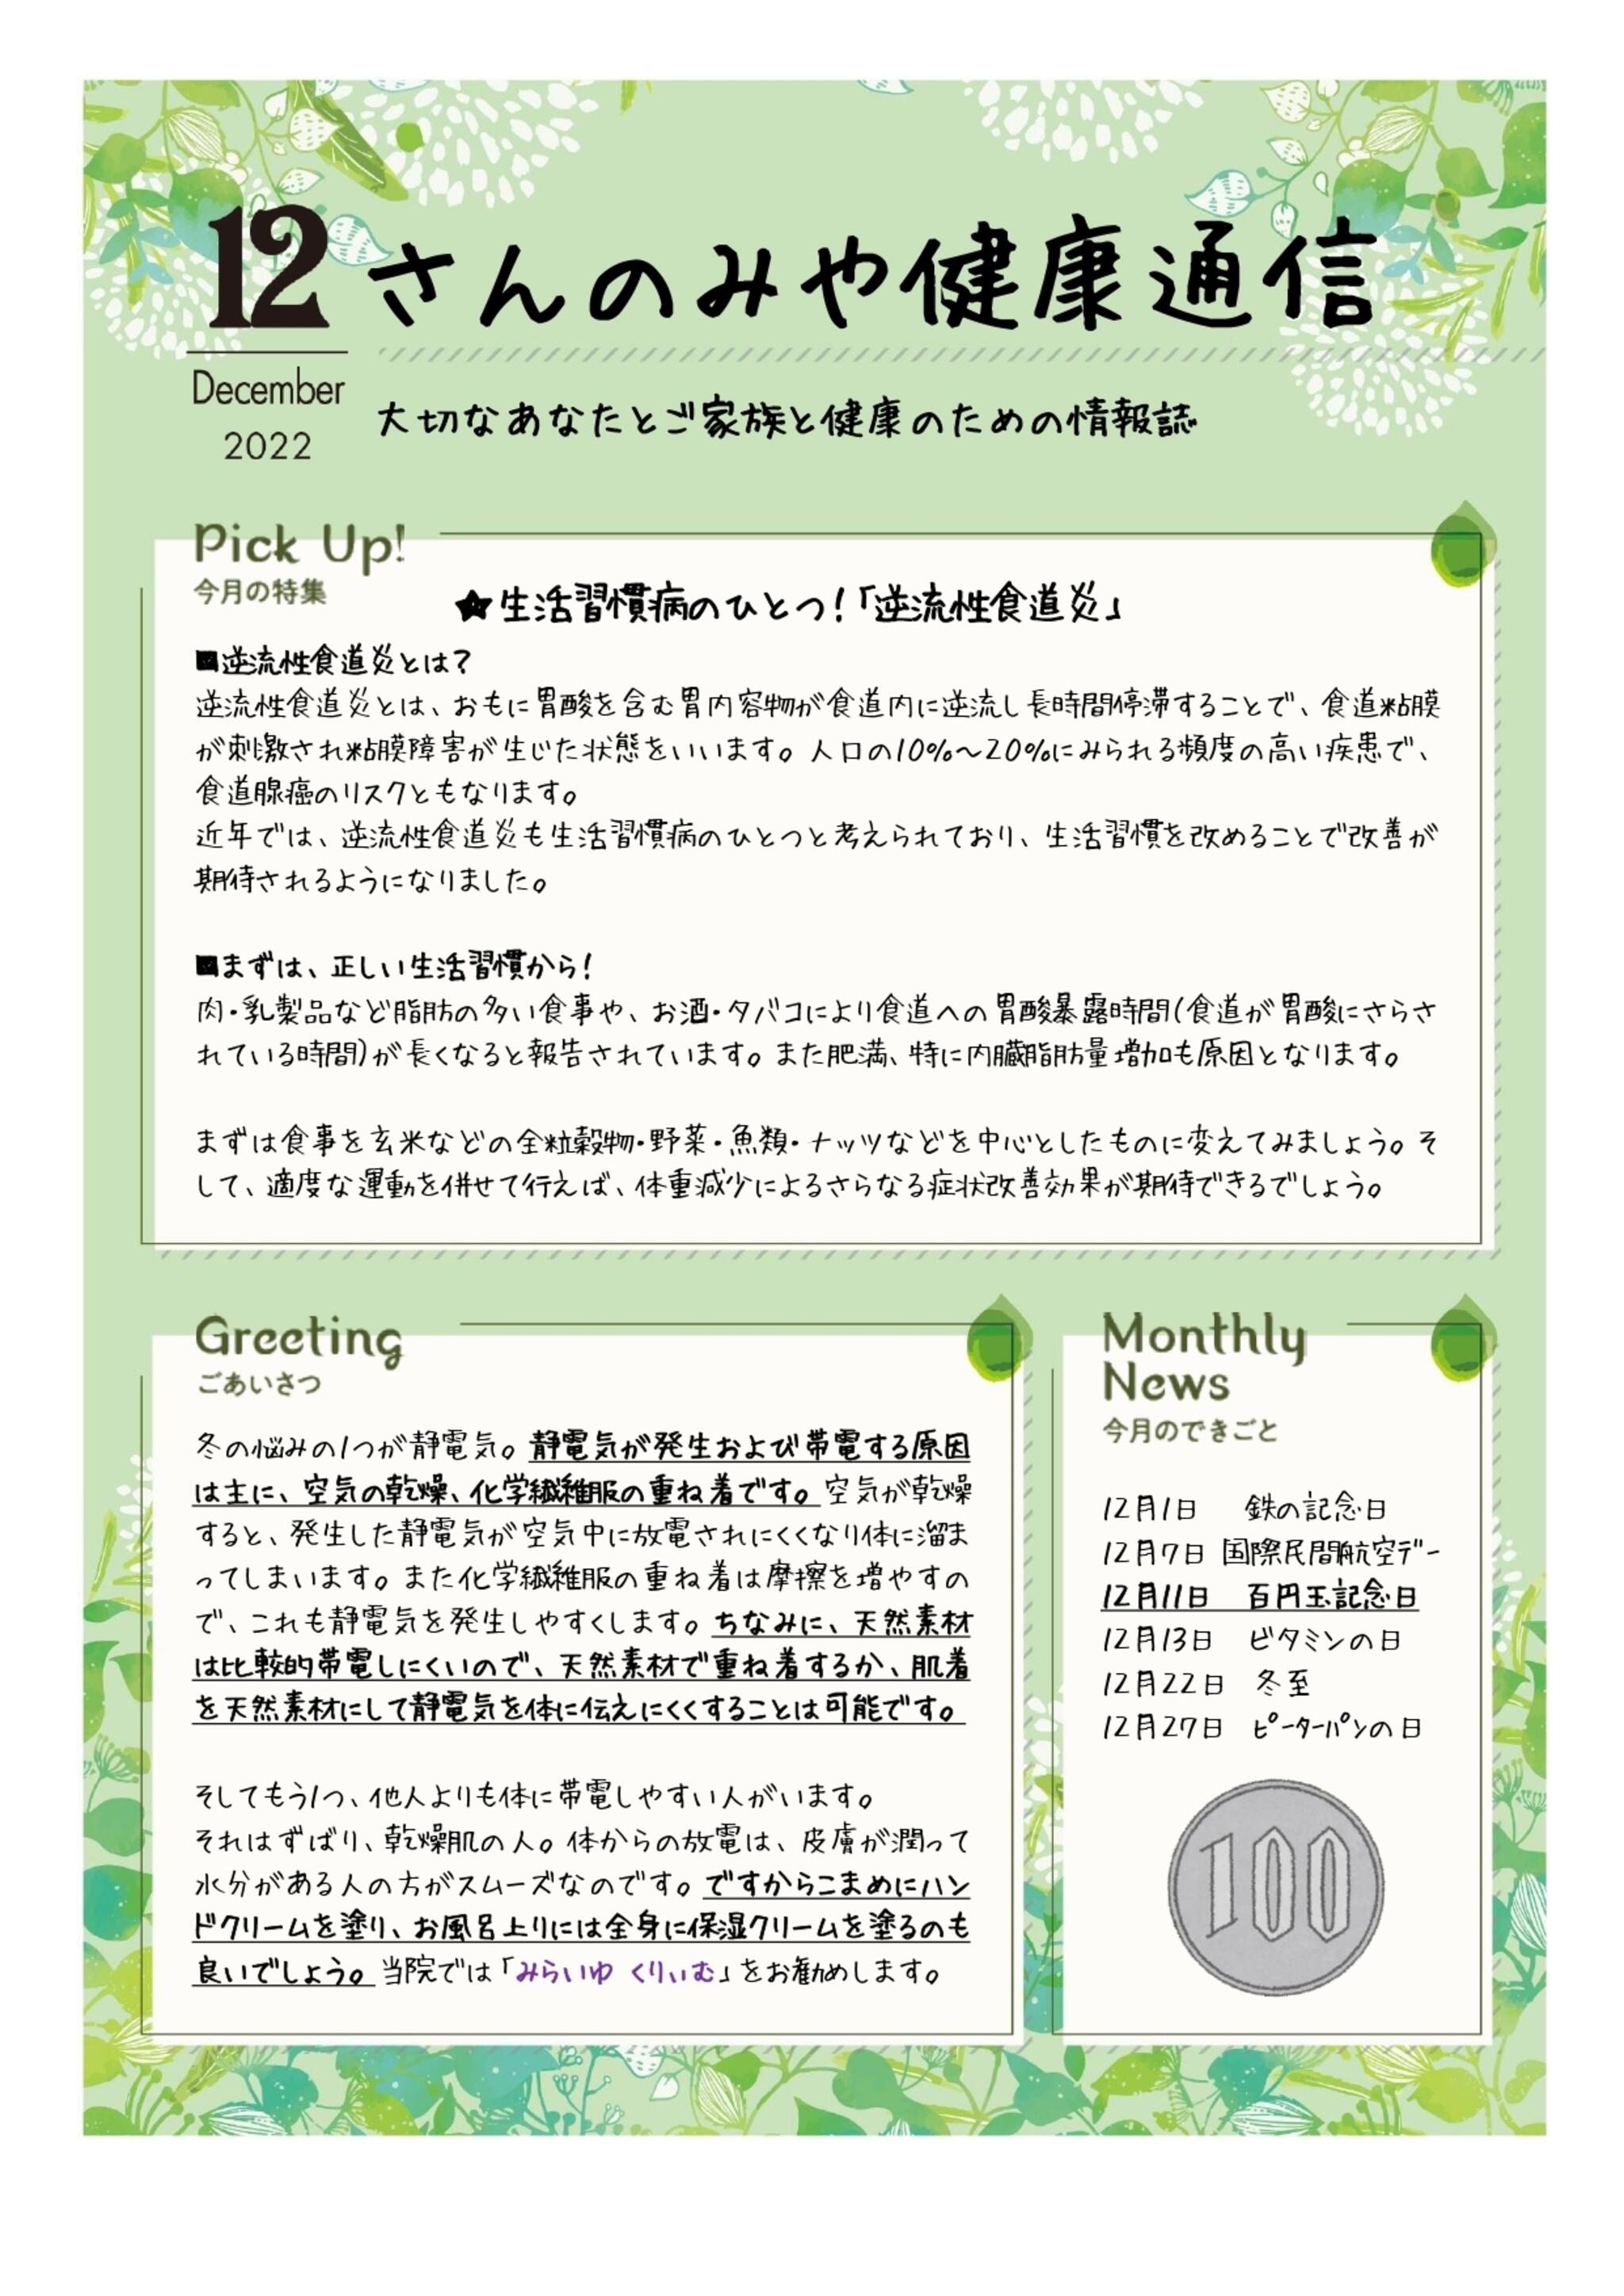 神戸三宮むつう整体院からのお知らせ(生活習慣病のひとつ！「逆流性食道炎」)に関する写真